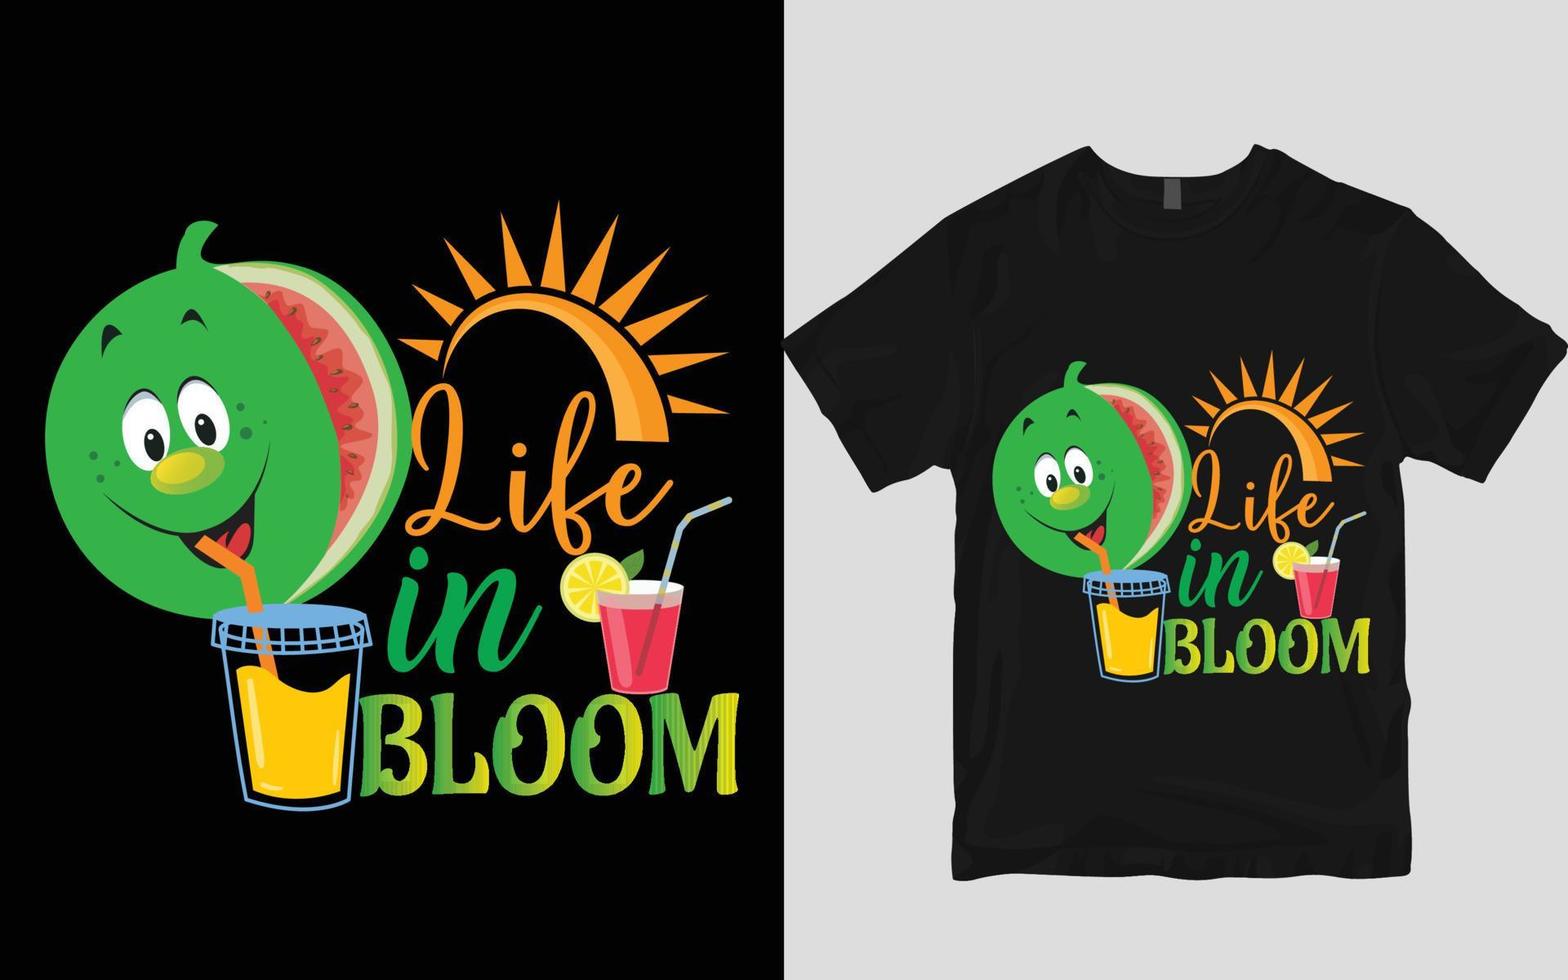 Summer t shirt design vector